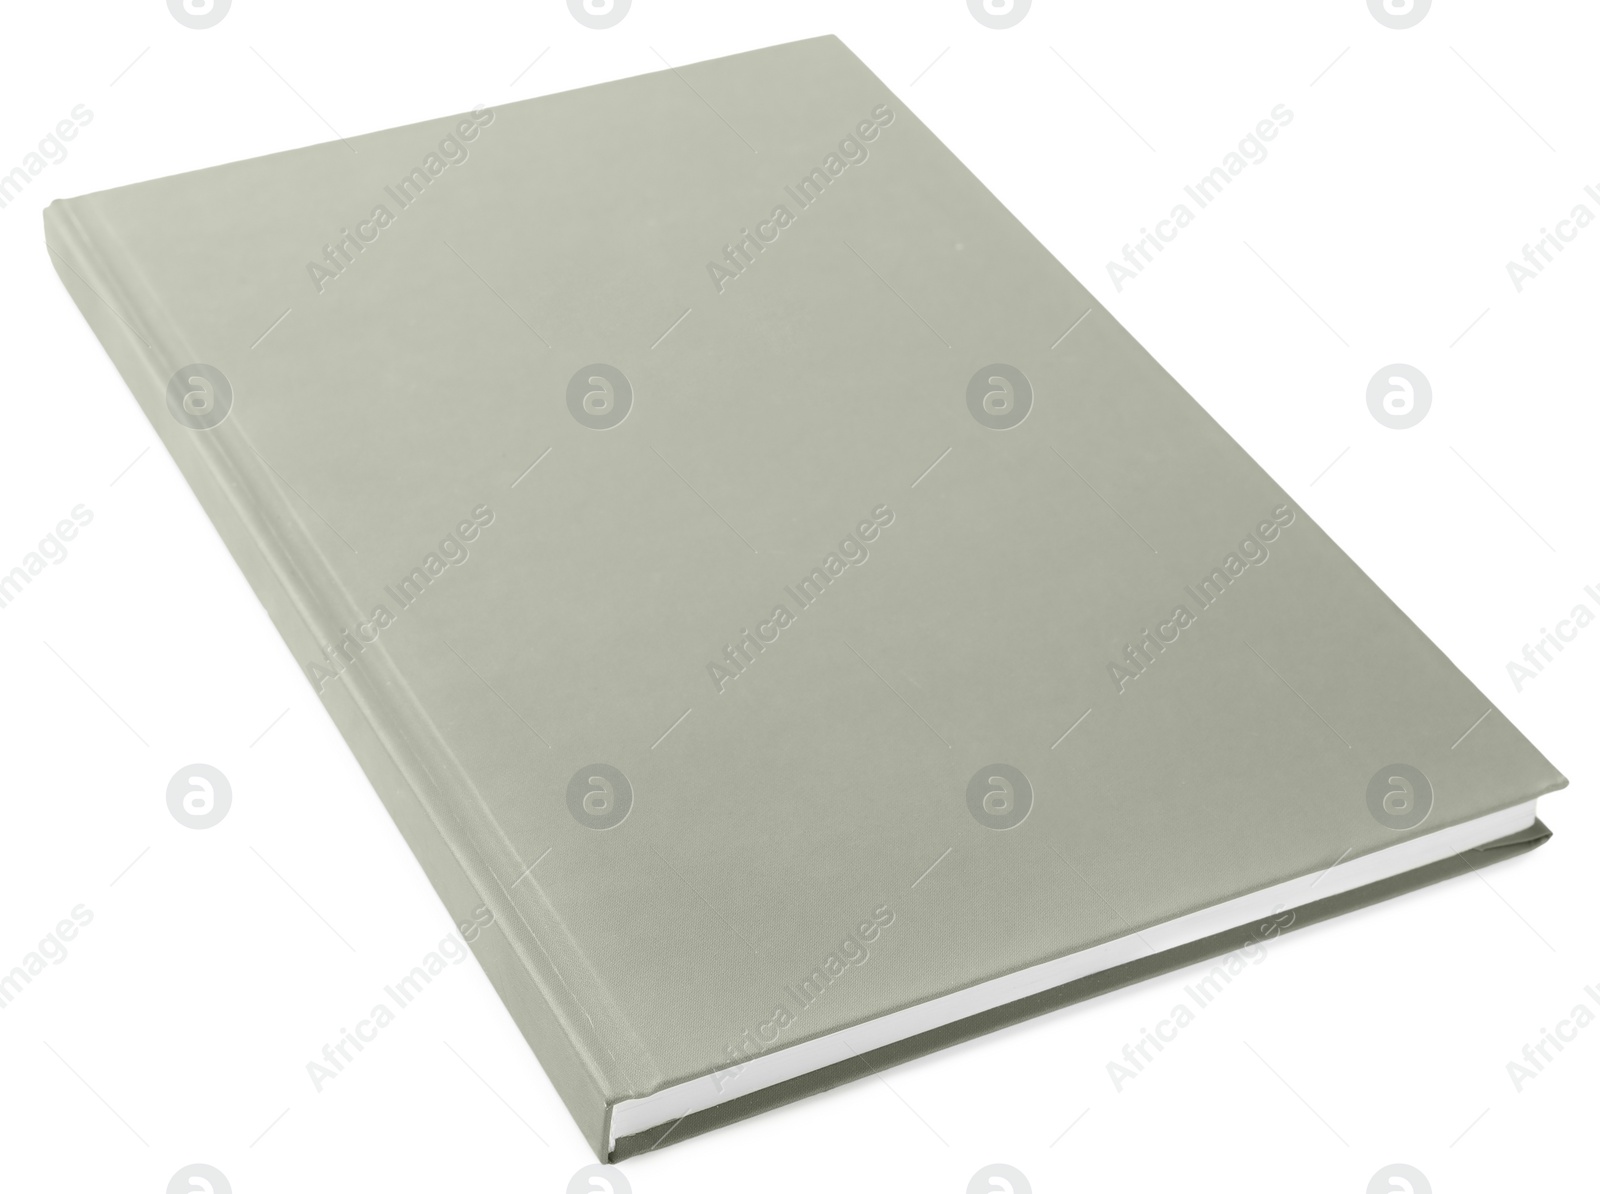 Photo of Stylish grey hardcover notebook isolated on white